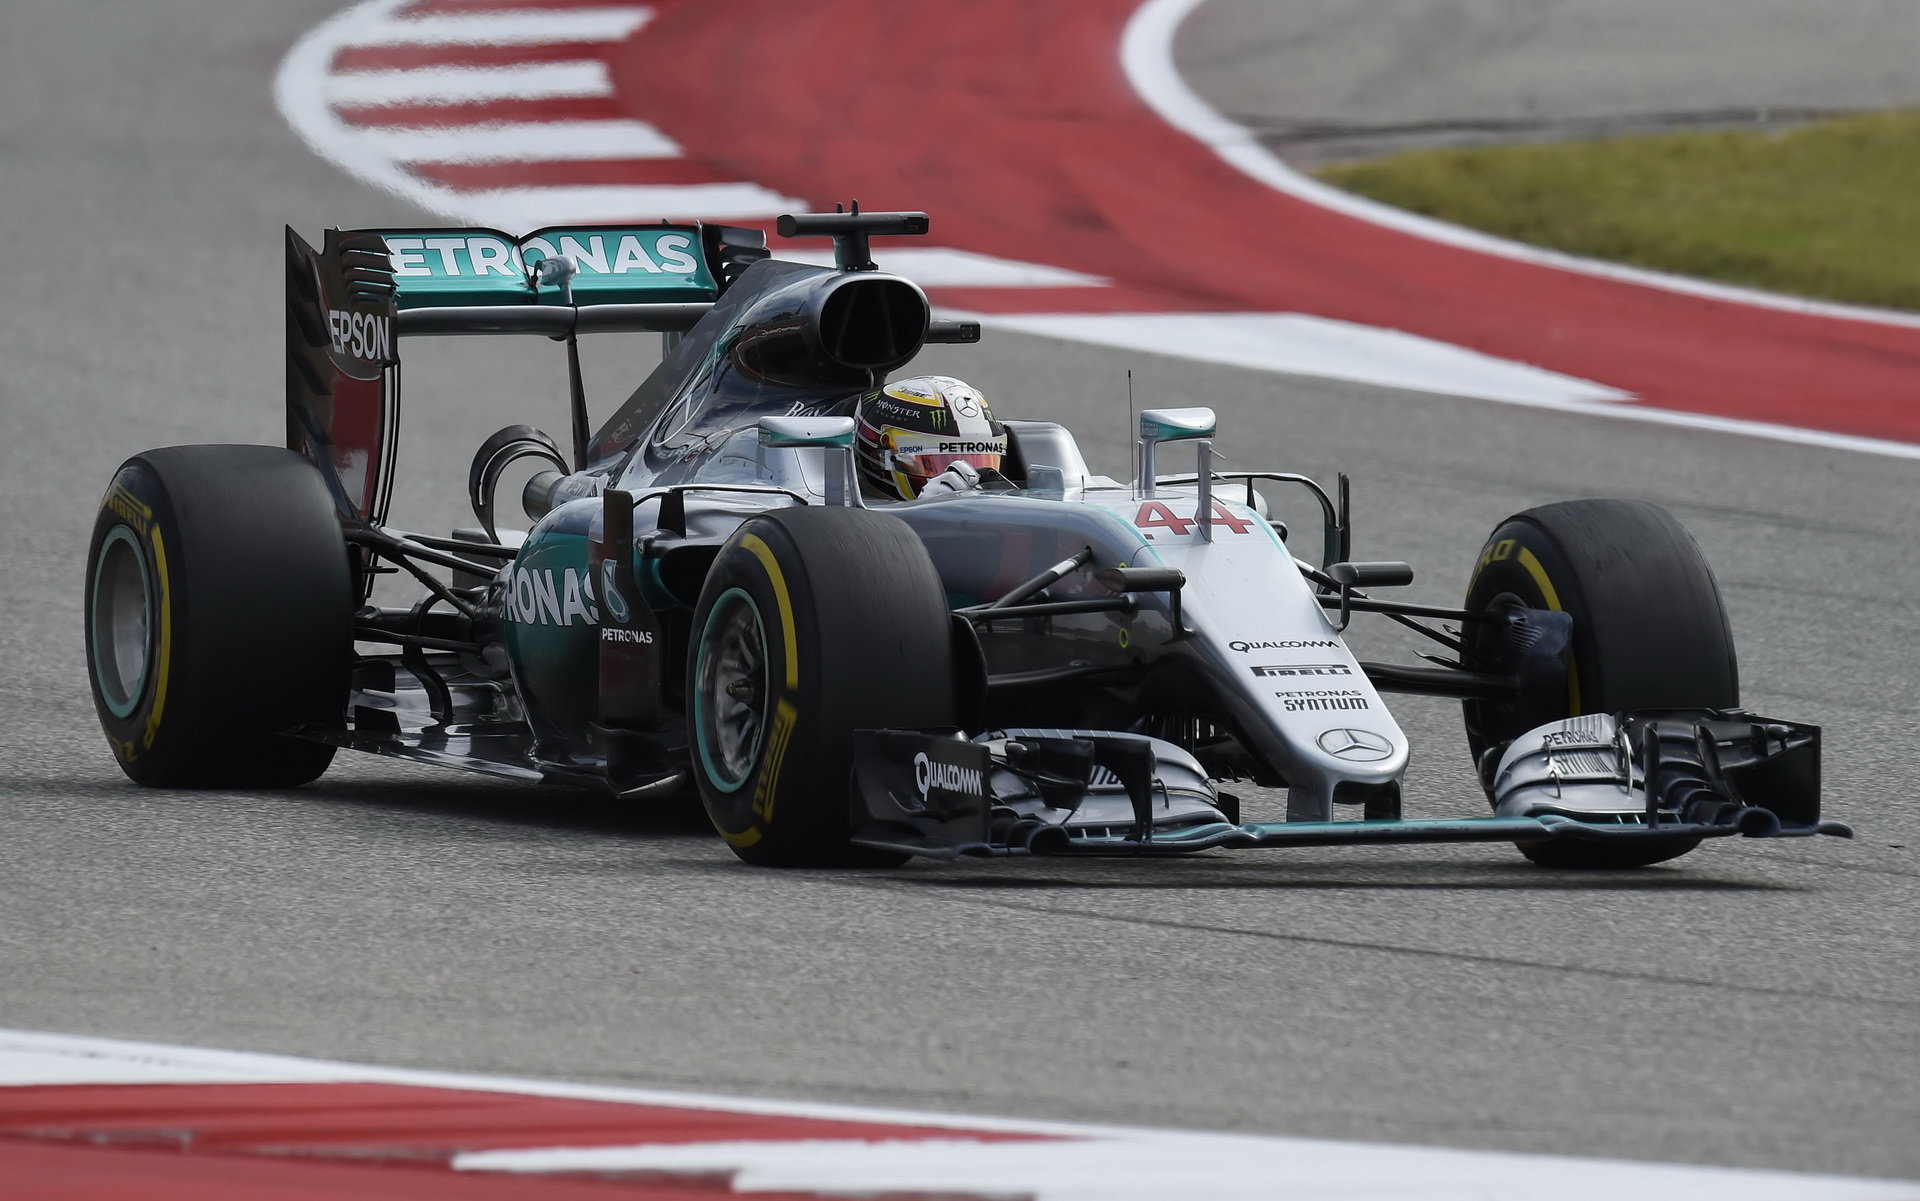 Lewis Hamilton v závodě v Austinu